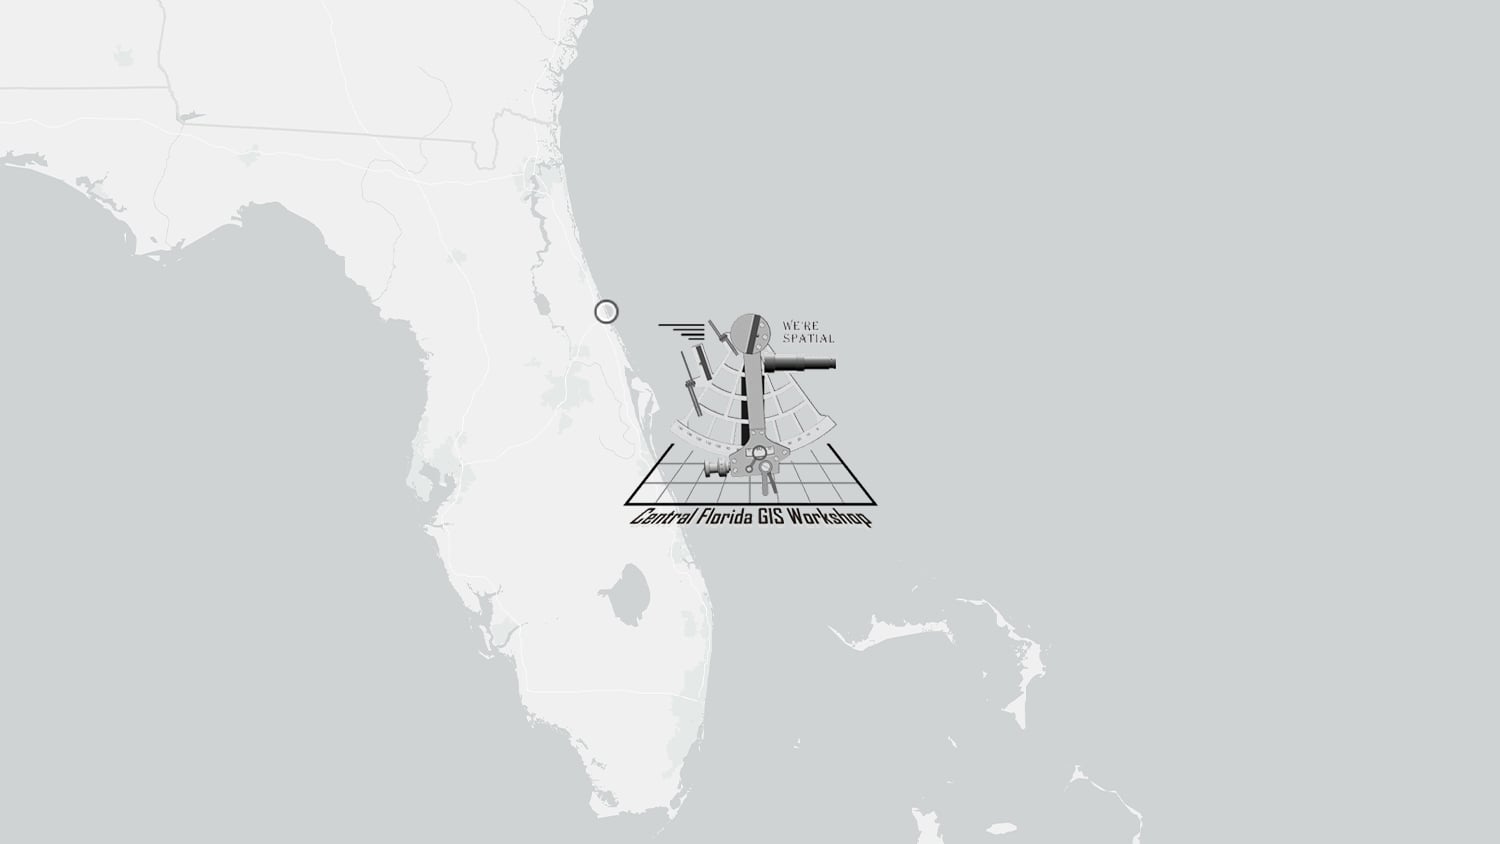 2022 Central Florida GIS Workshop